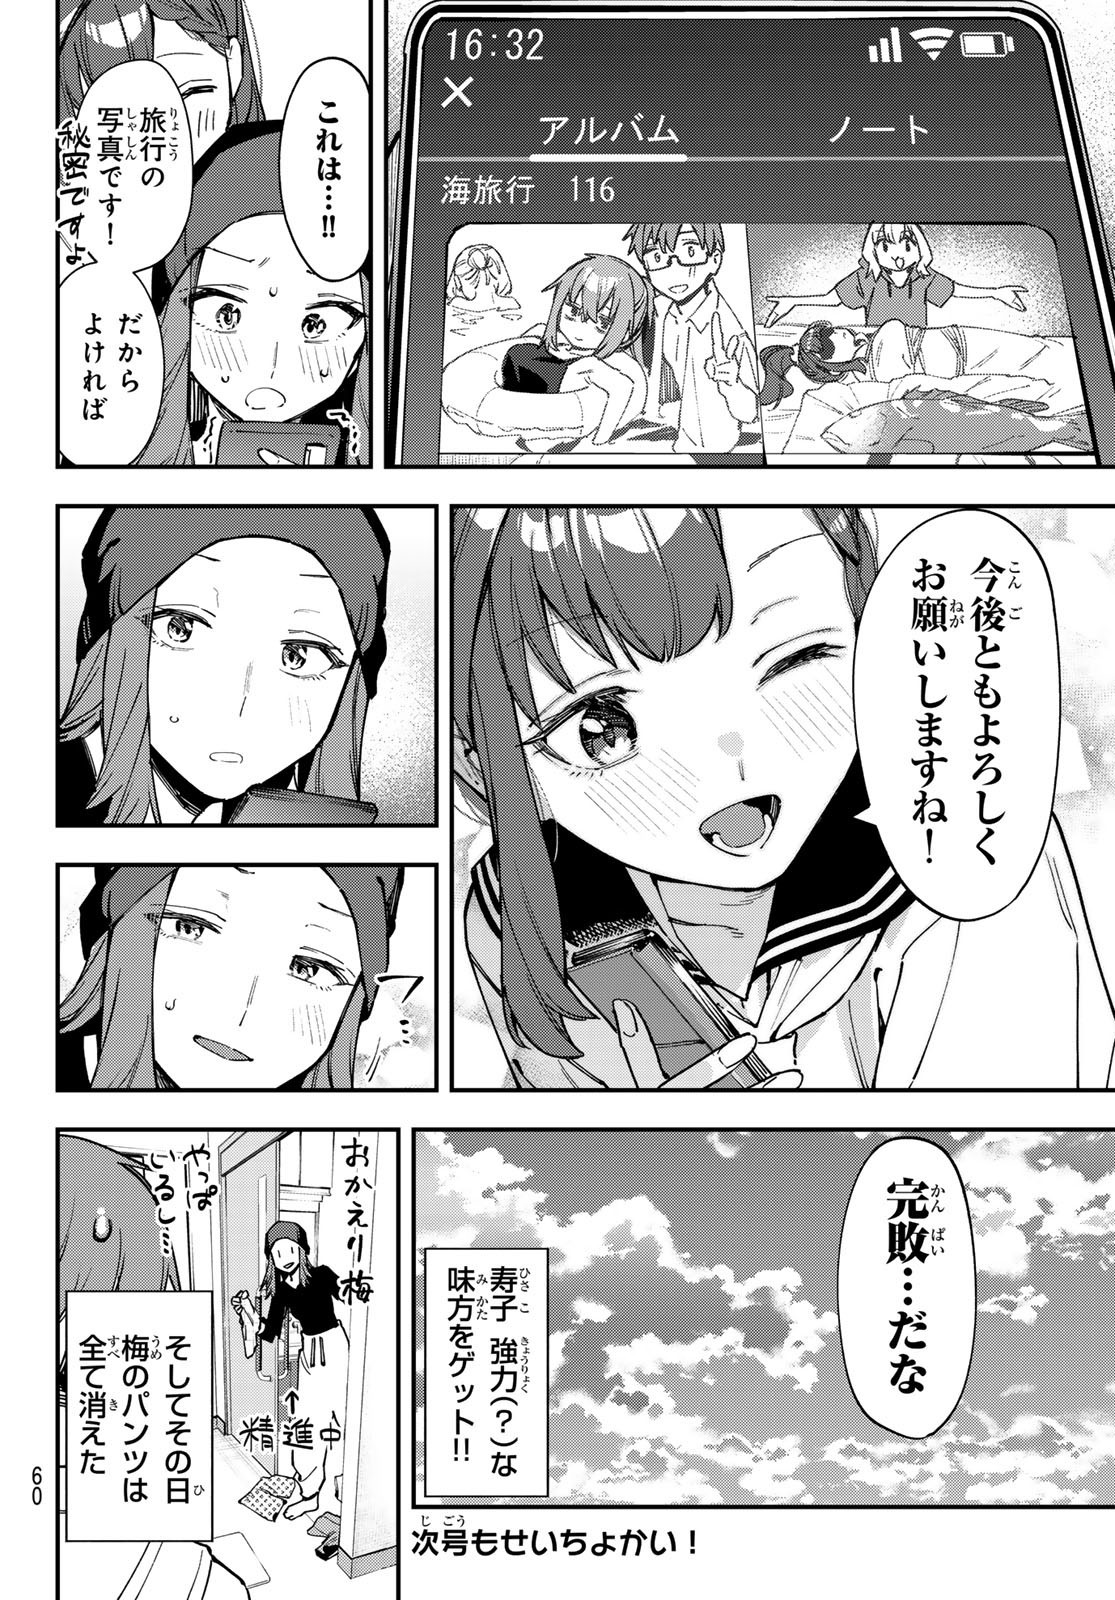 Seitokai ni mo Ana wa Aru! - Chapter 075 - Page 8